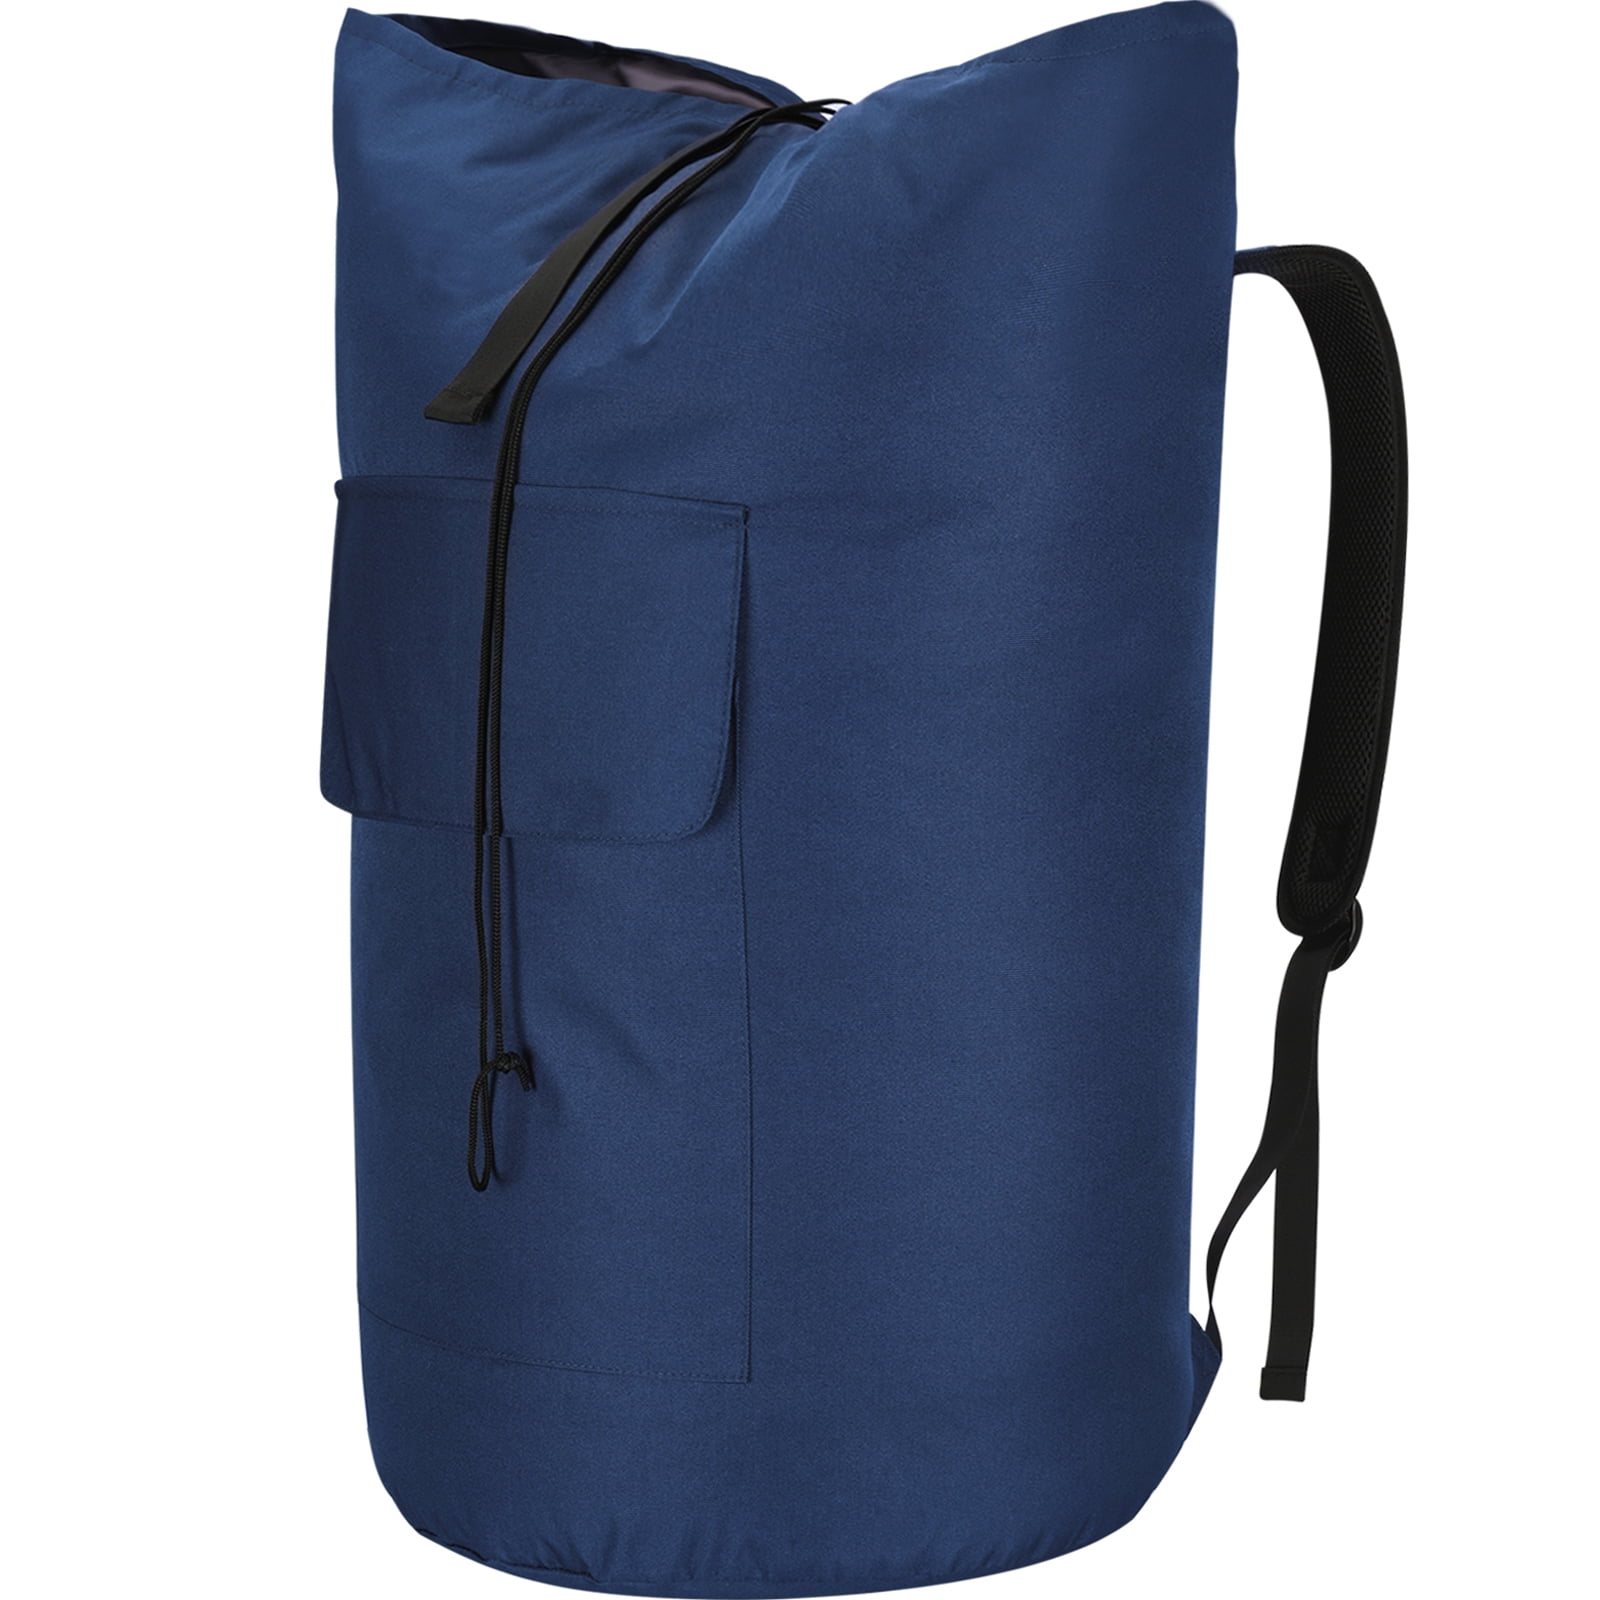 Extra Large Laundry Bag – Royal Blue 30x45